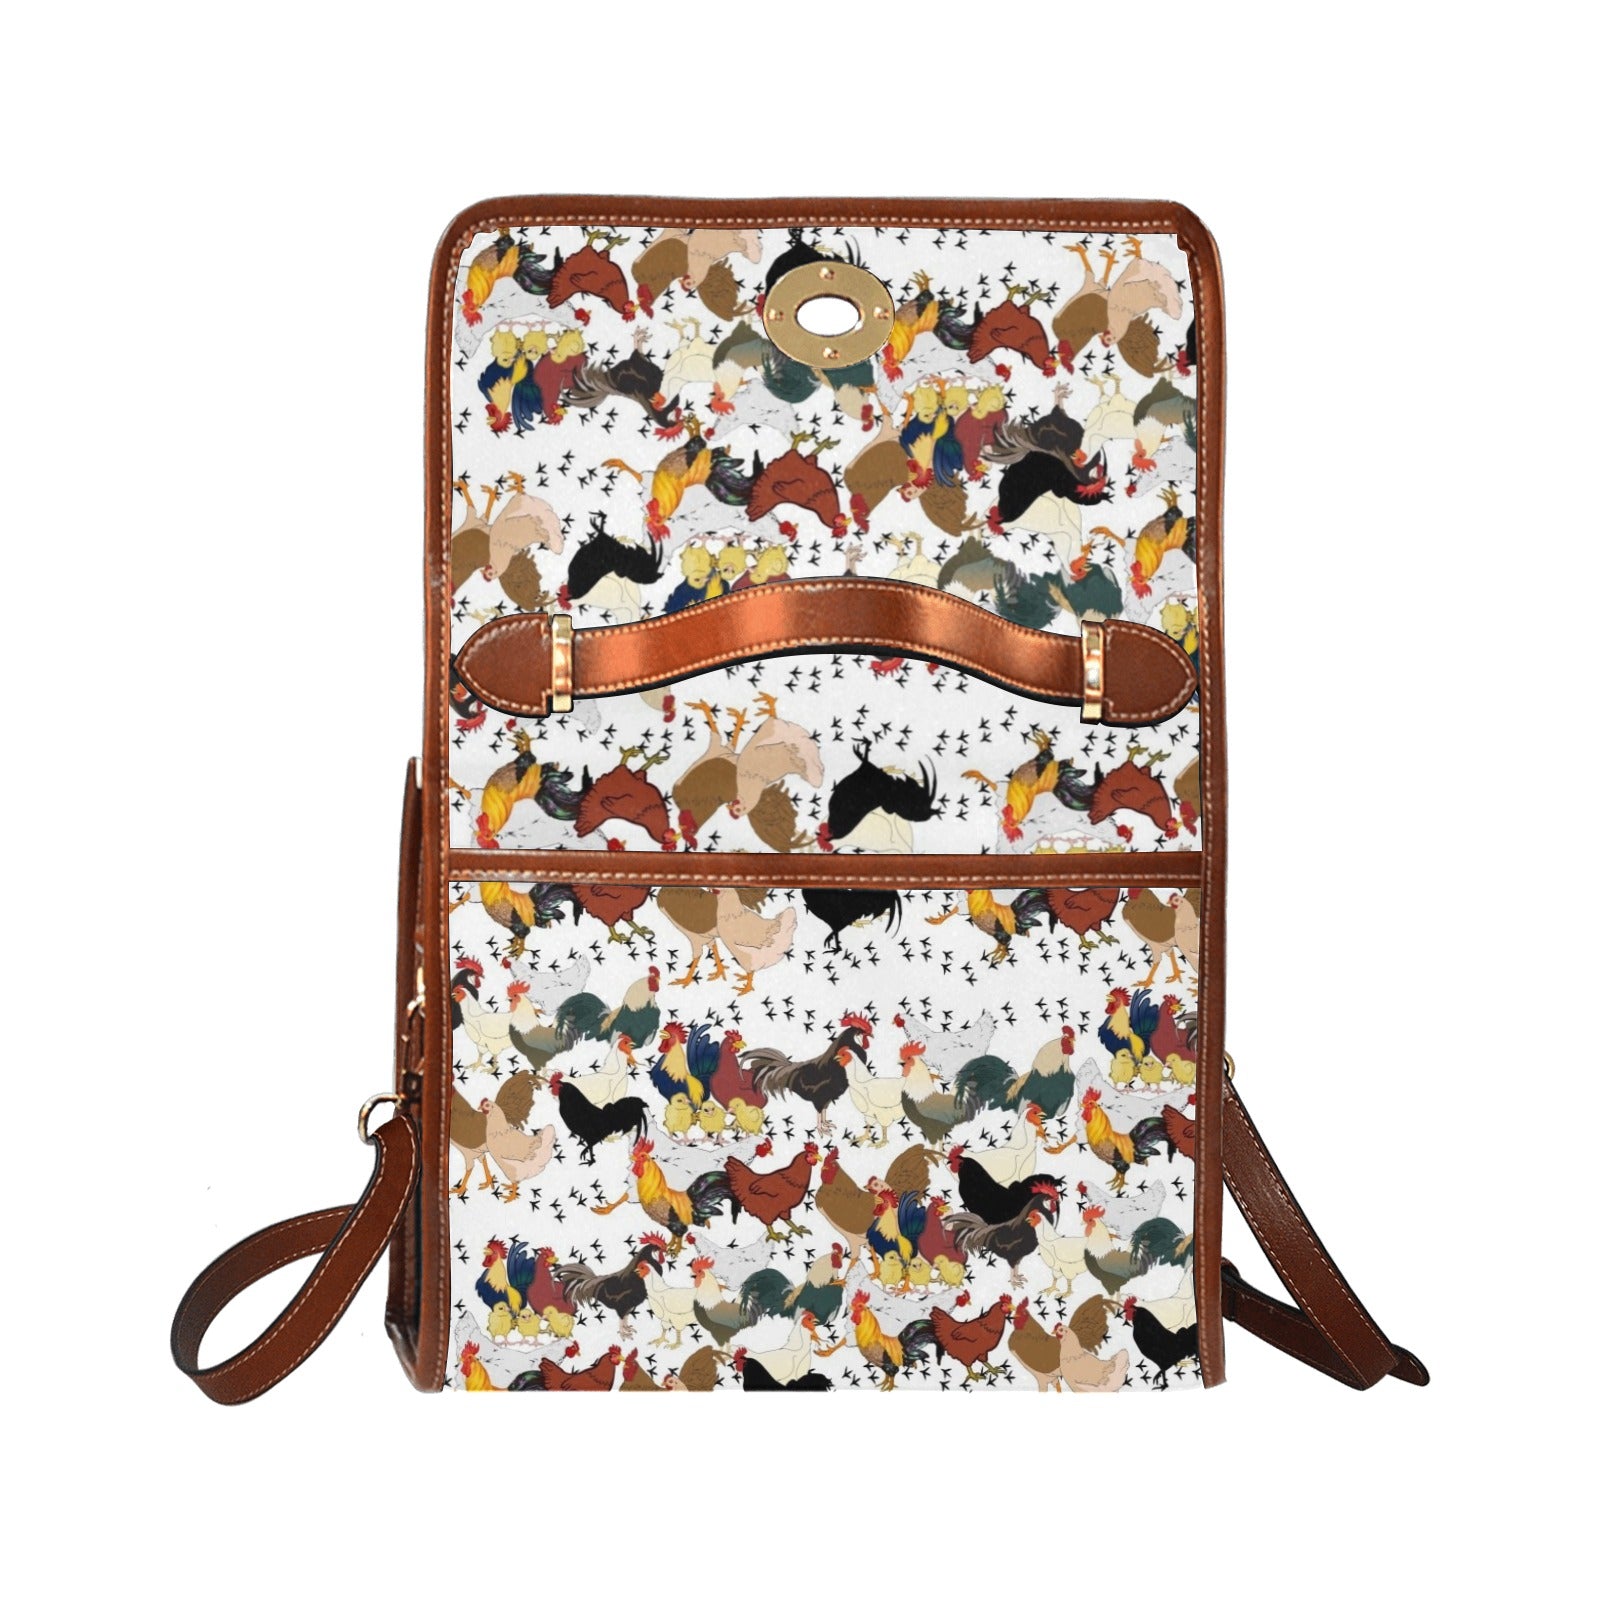 Chicken - Waterproof Canvas Handbag